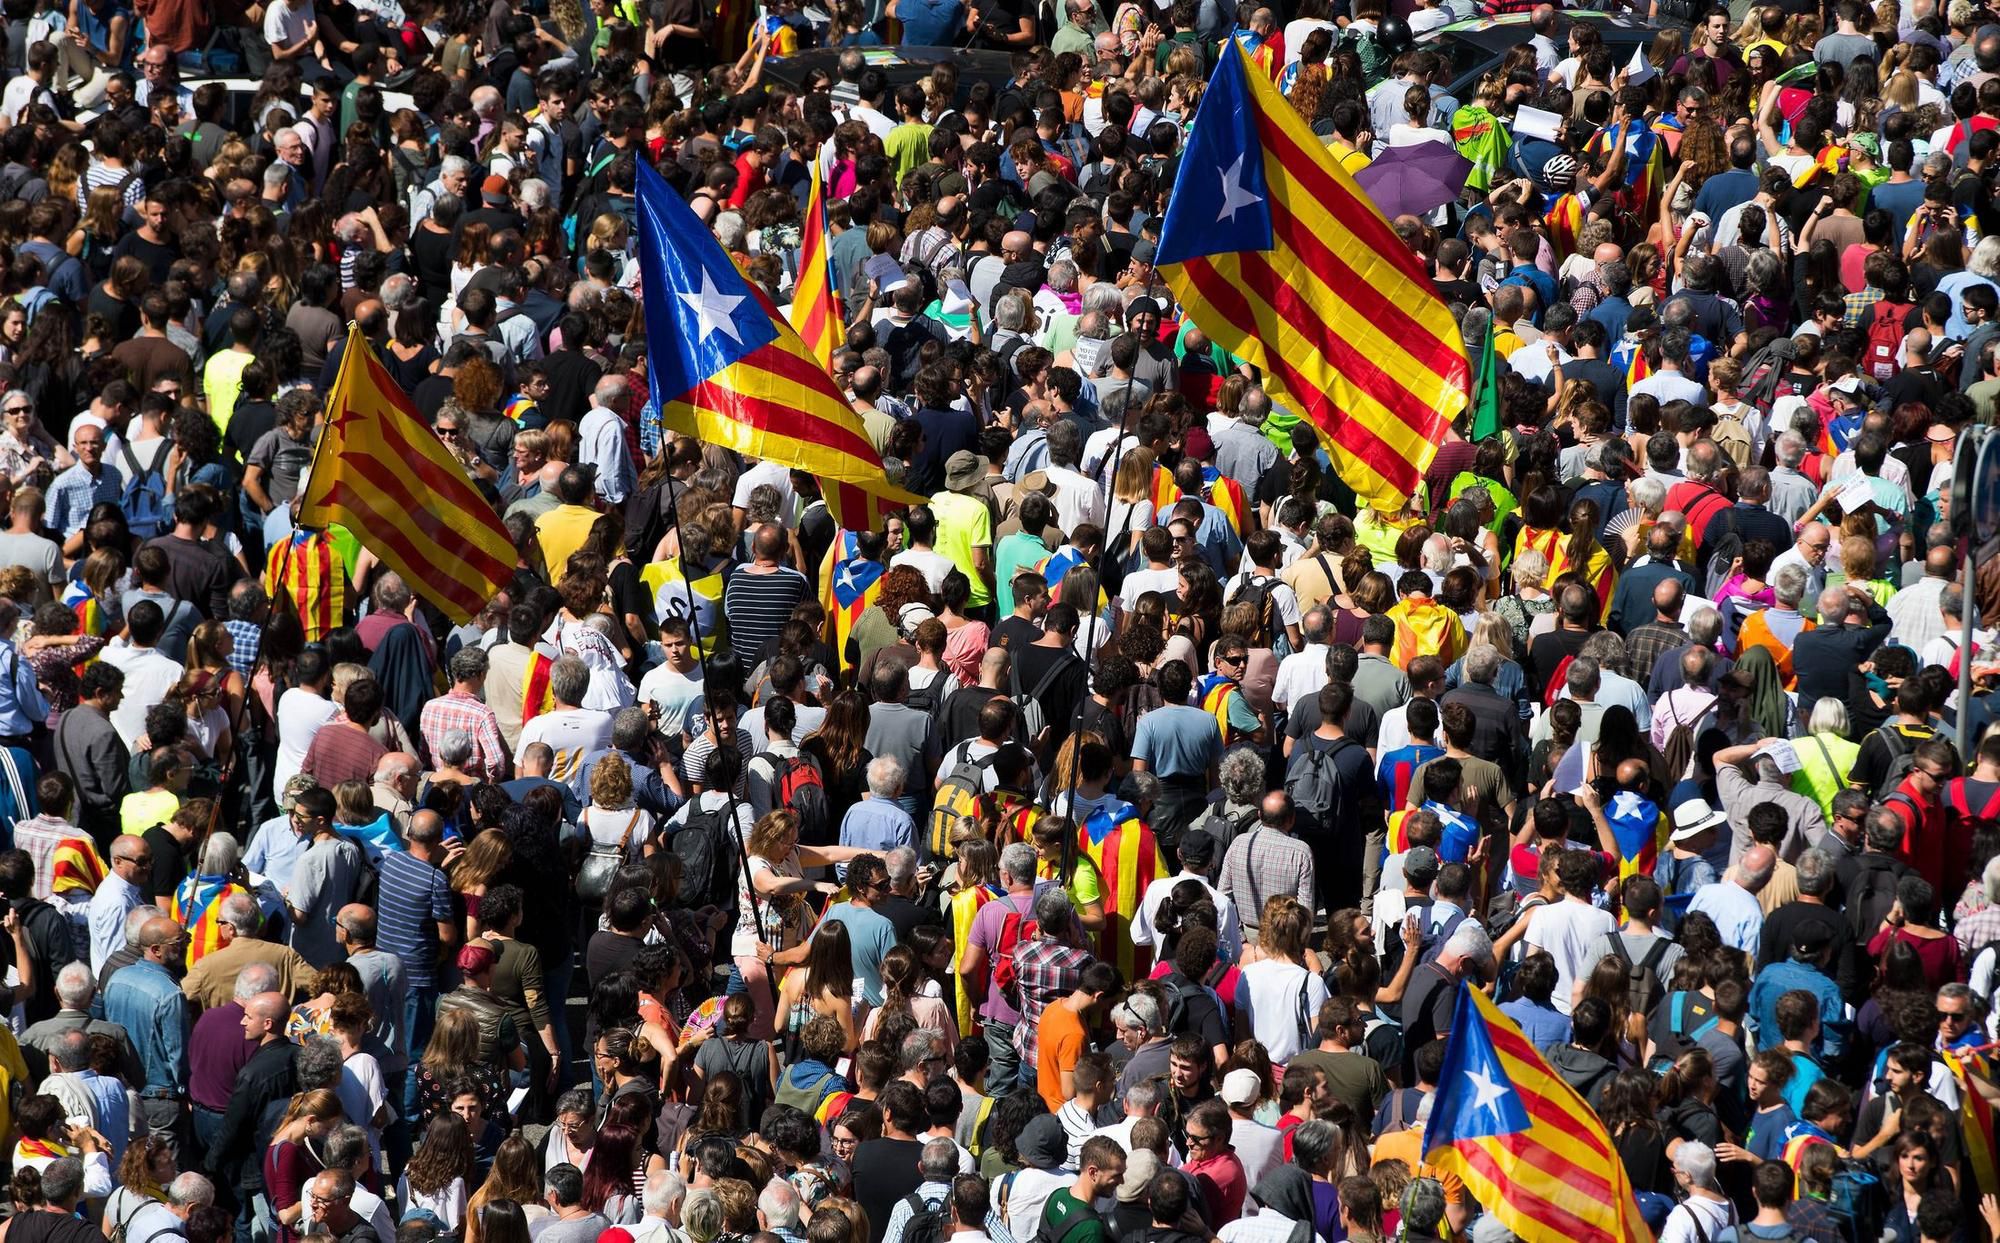 Boj za referendum v Katalánsku